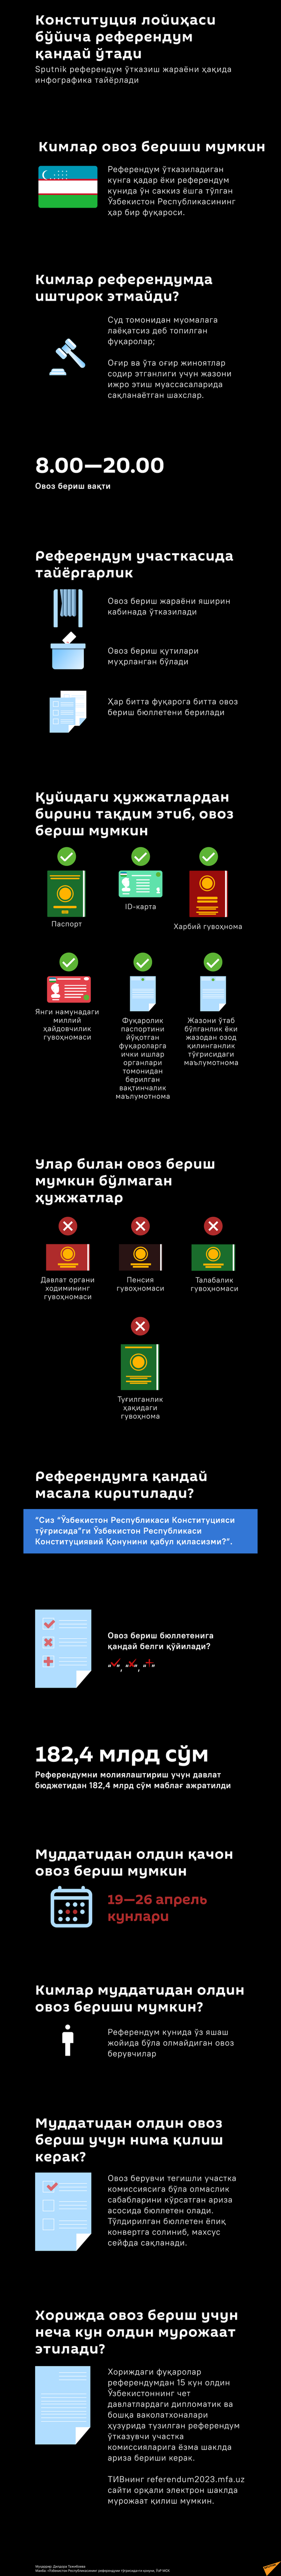 Референдум по проекту конституции инфографика узб - Sputnik Ўзбекистон